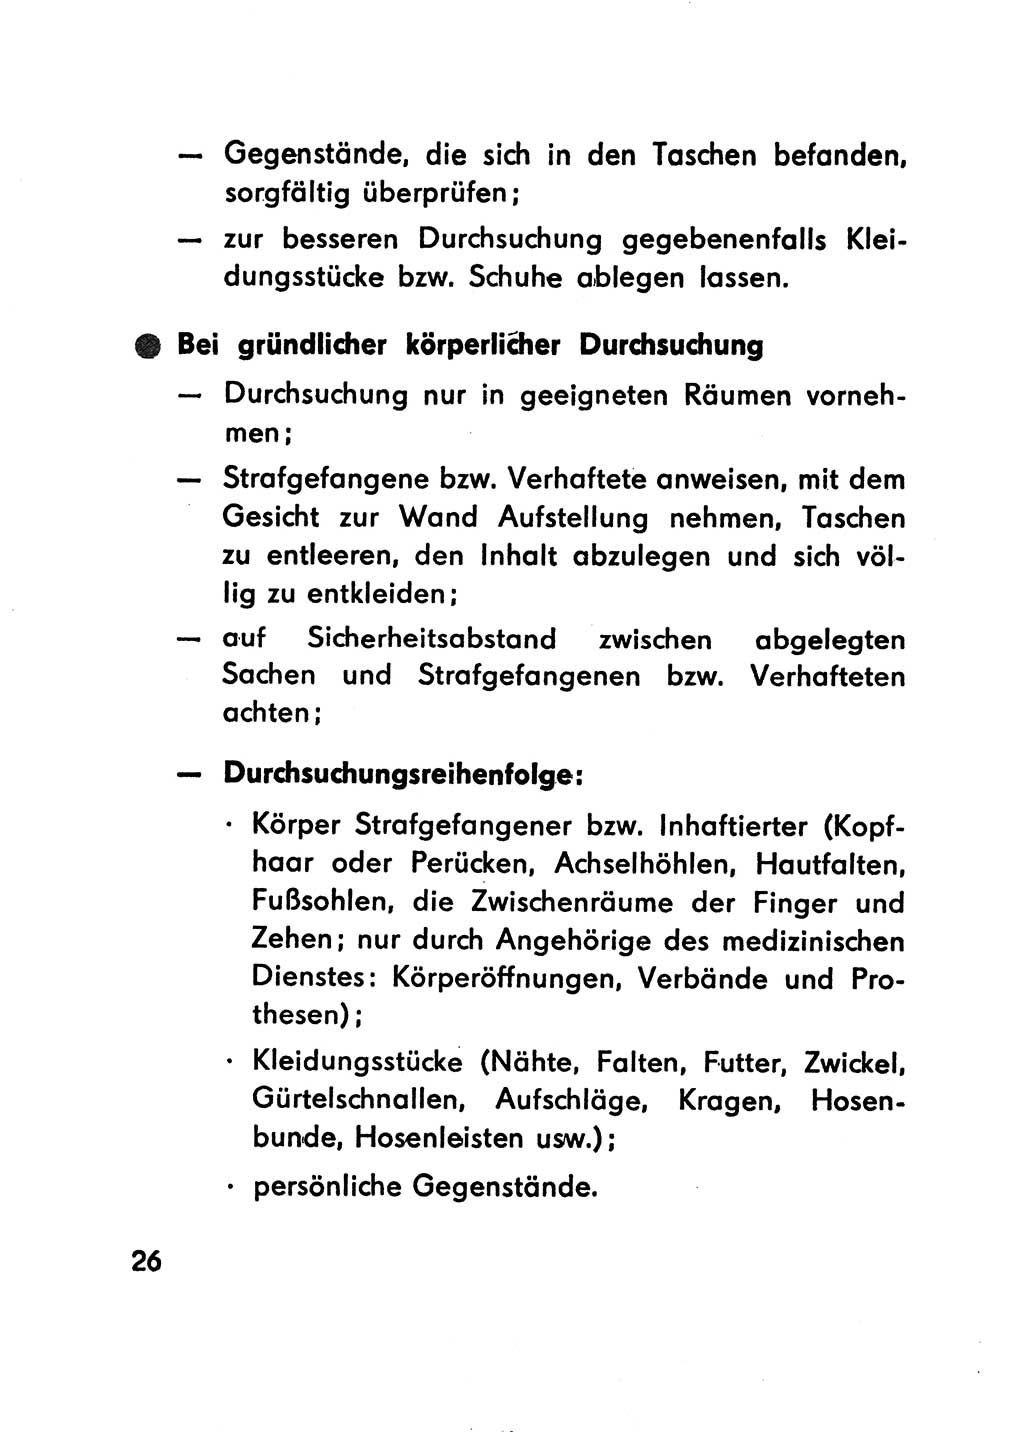 Merkbuch für SV-Angehörige [Strafvollzug (SV) Deutsche Demokratische Republik (DDR)] 1975, Seite 26 (SV-Angeh. DDR 1975, S. 26)